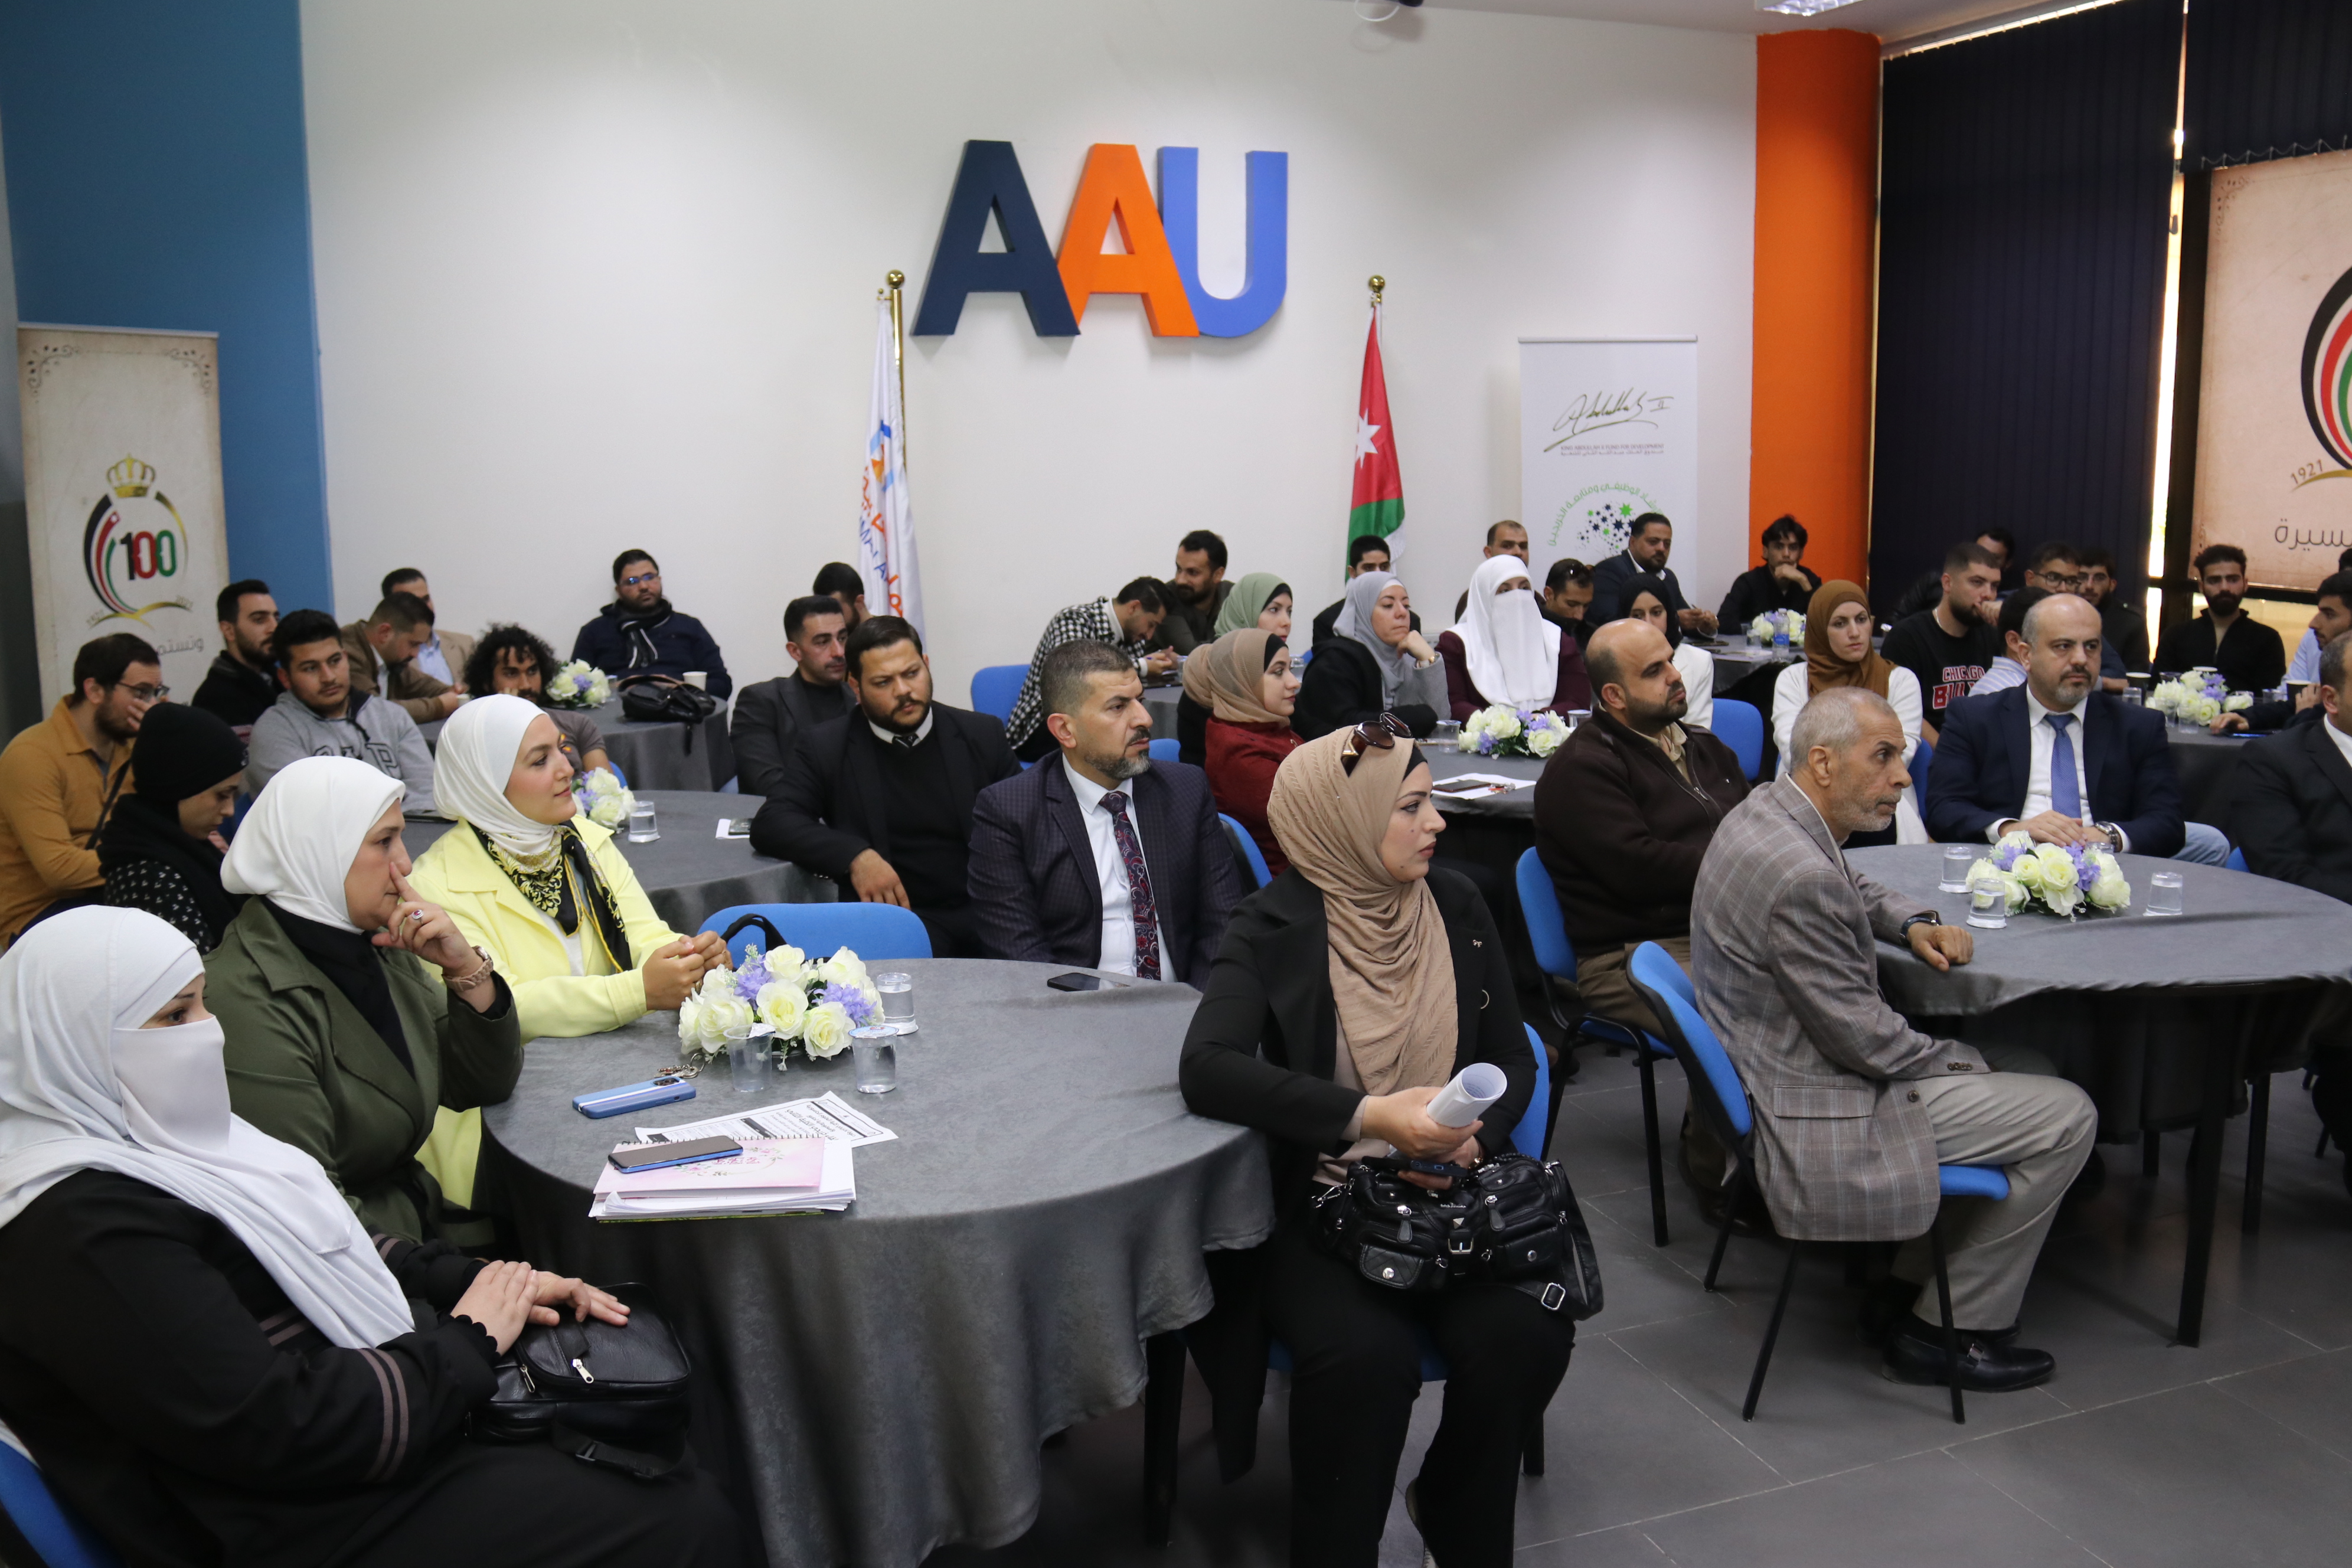 كلية العلوم الحاسوبية والمعلوماتية في "عمان العربية" تلتقي بخريجيها2